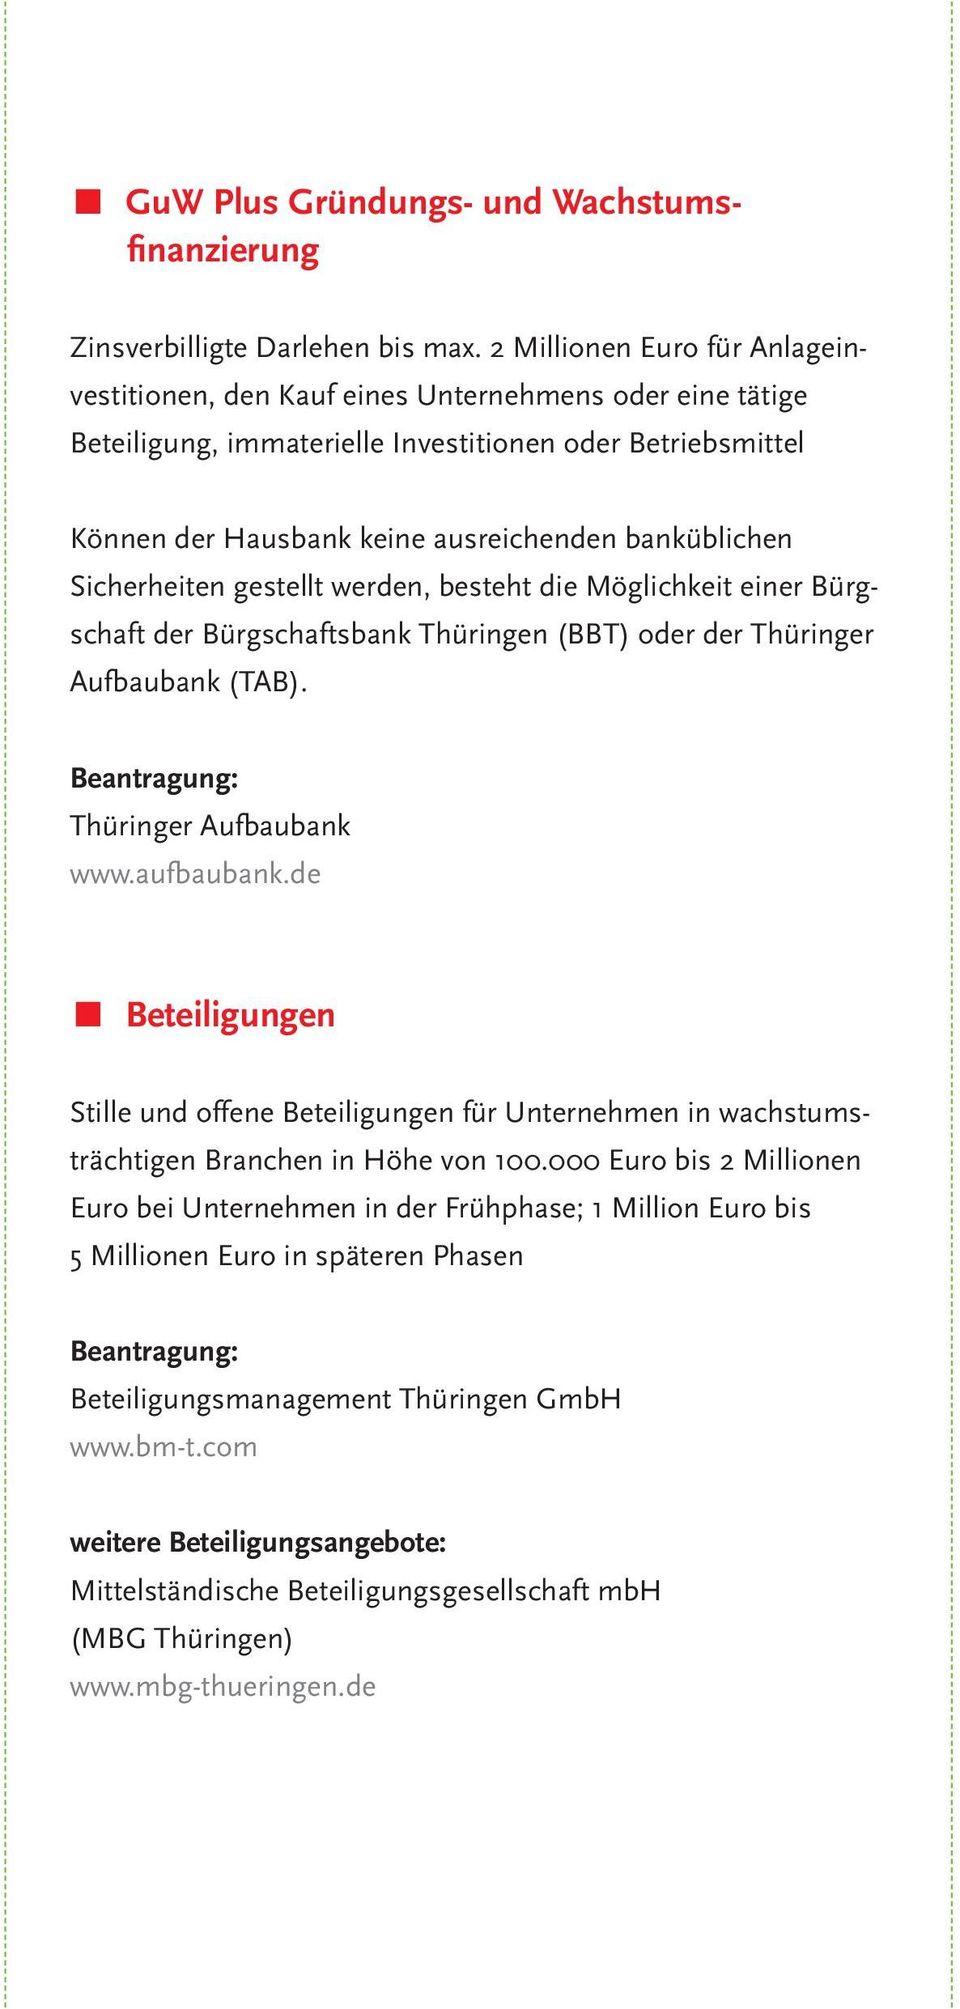 Sicherheiten gestellt werden, besteht die Möglichkeit einer Bürgschaft der Bürgschaftsbank Thüringen (BBT) oder der Thüringer Aufbaubank (TAB). Thüringer Aufbaubank www.aufbaubank.